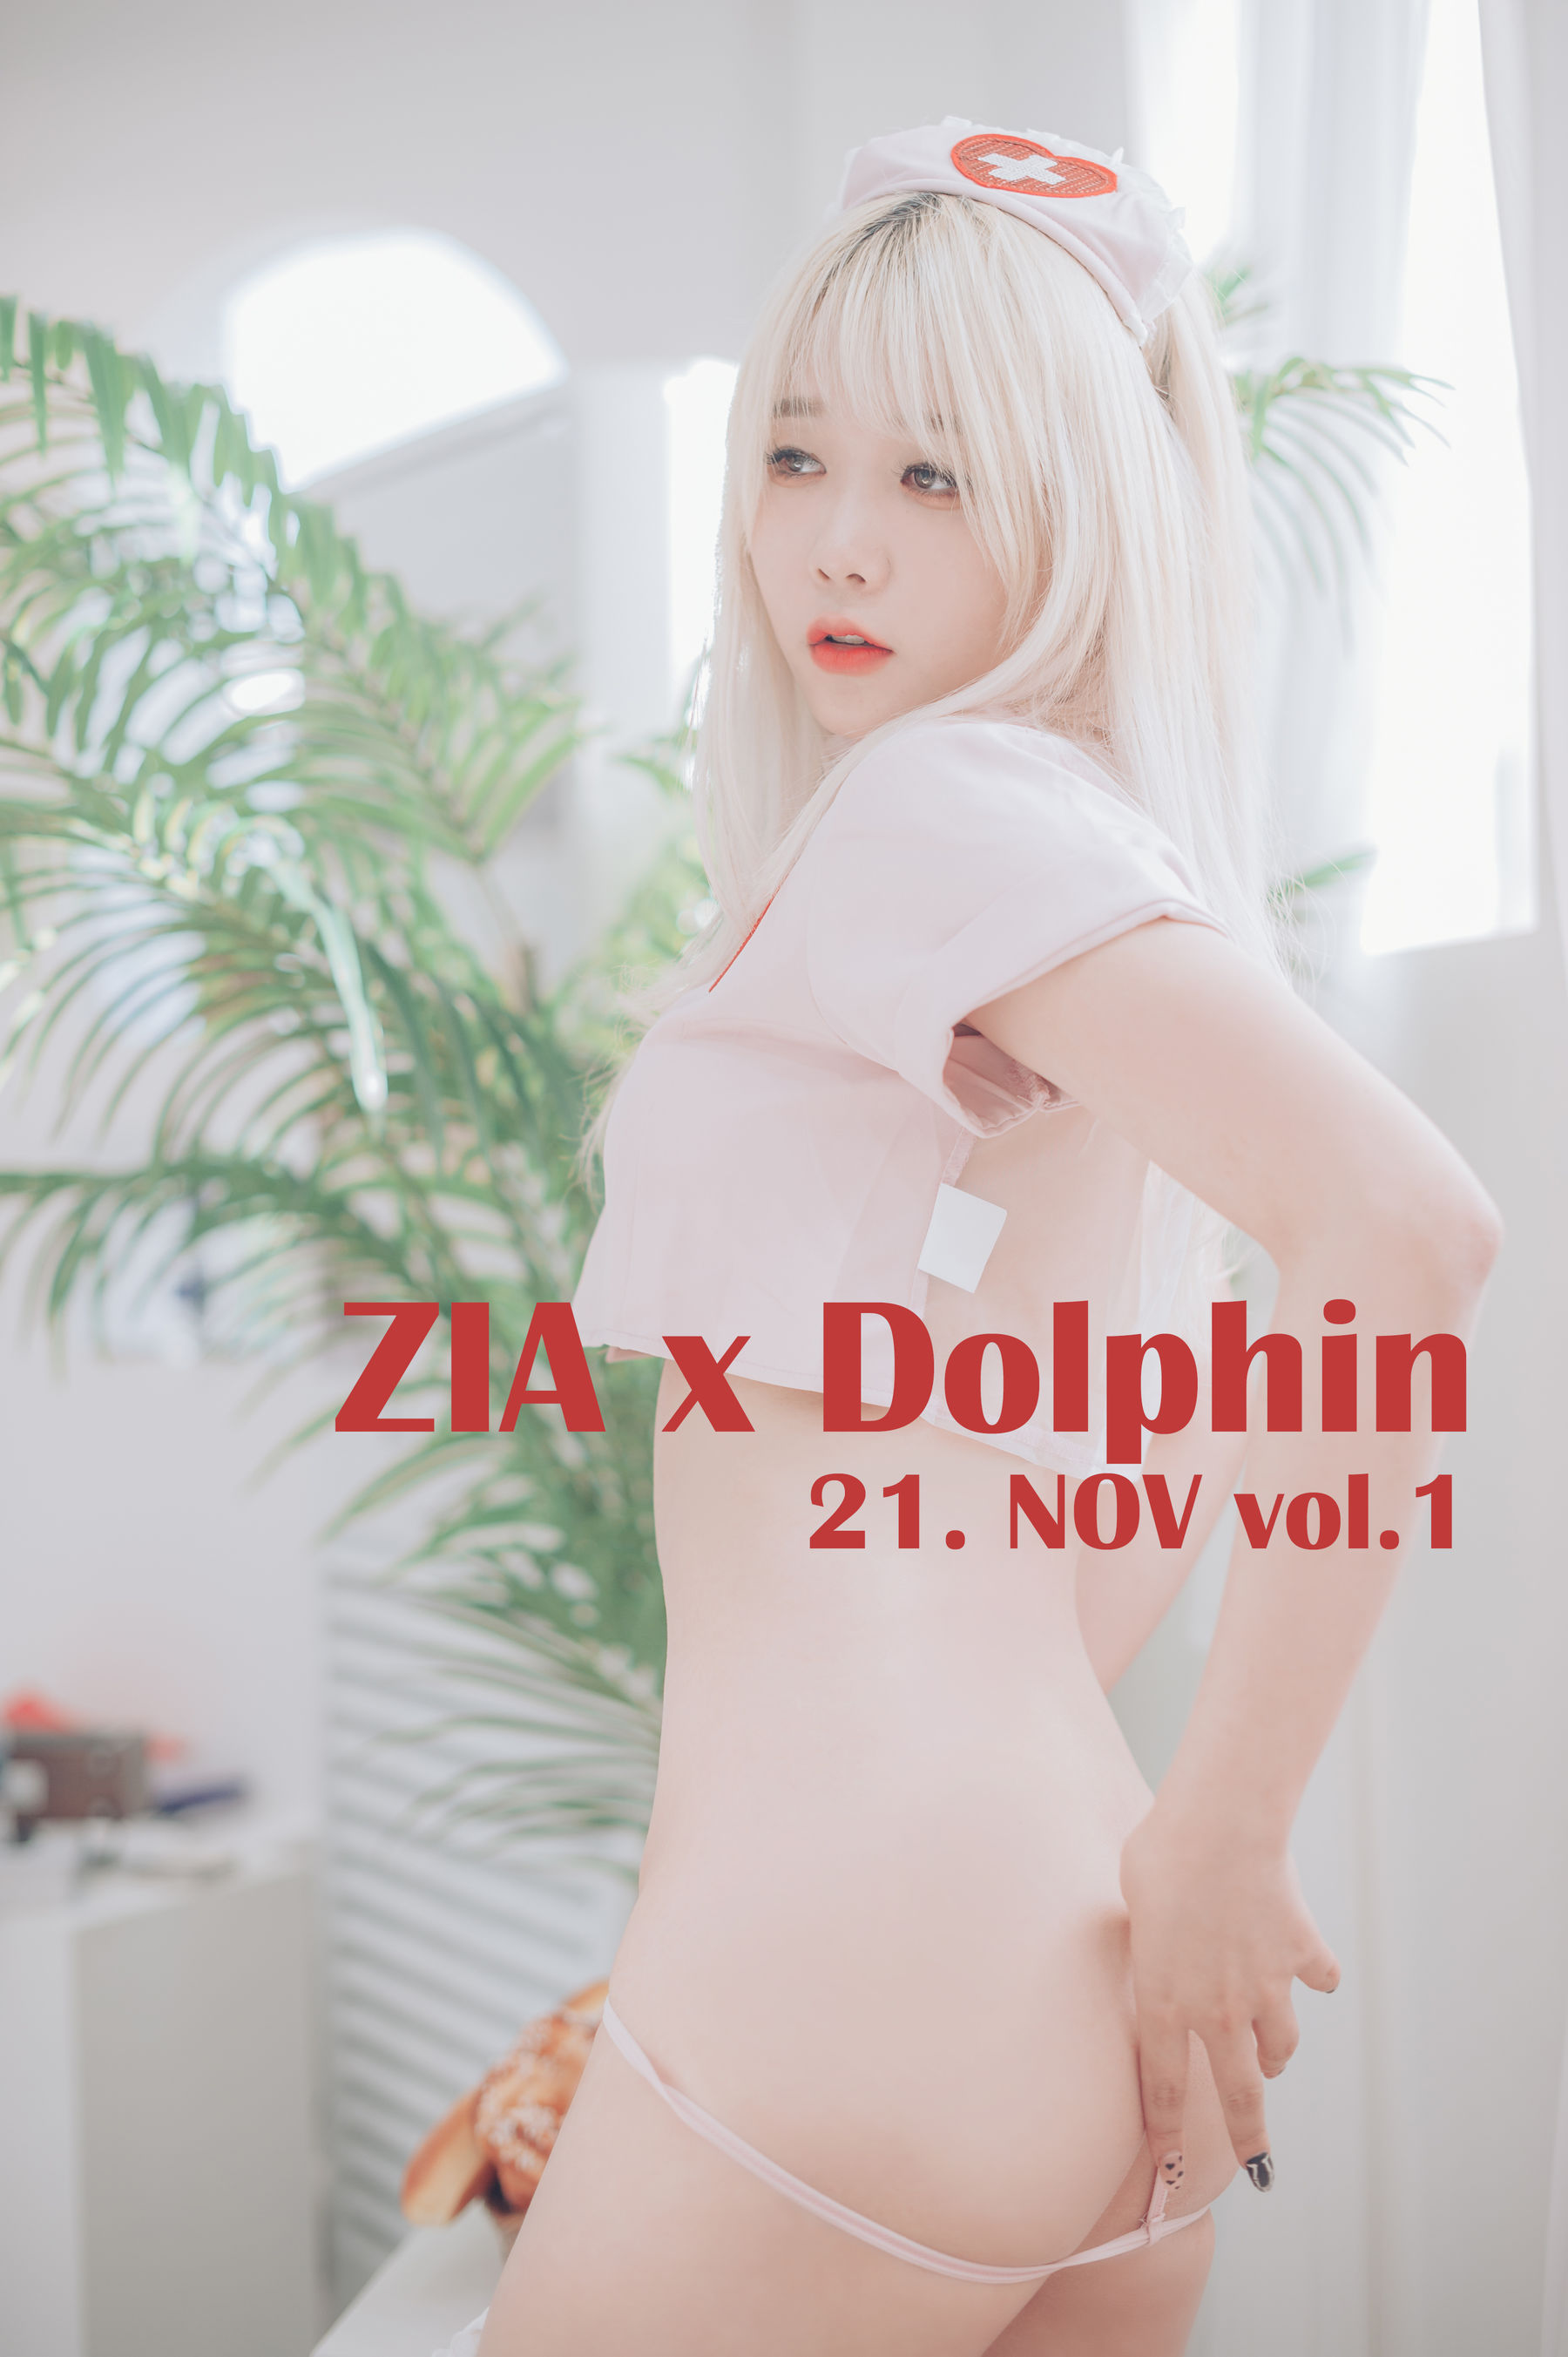 [JOApictures] Zia x DOLPHIN 21. NOV Vol.1